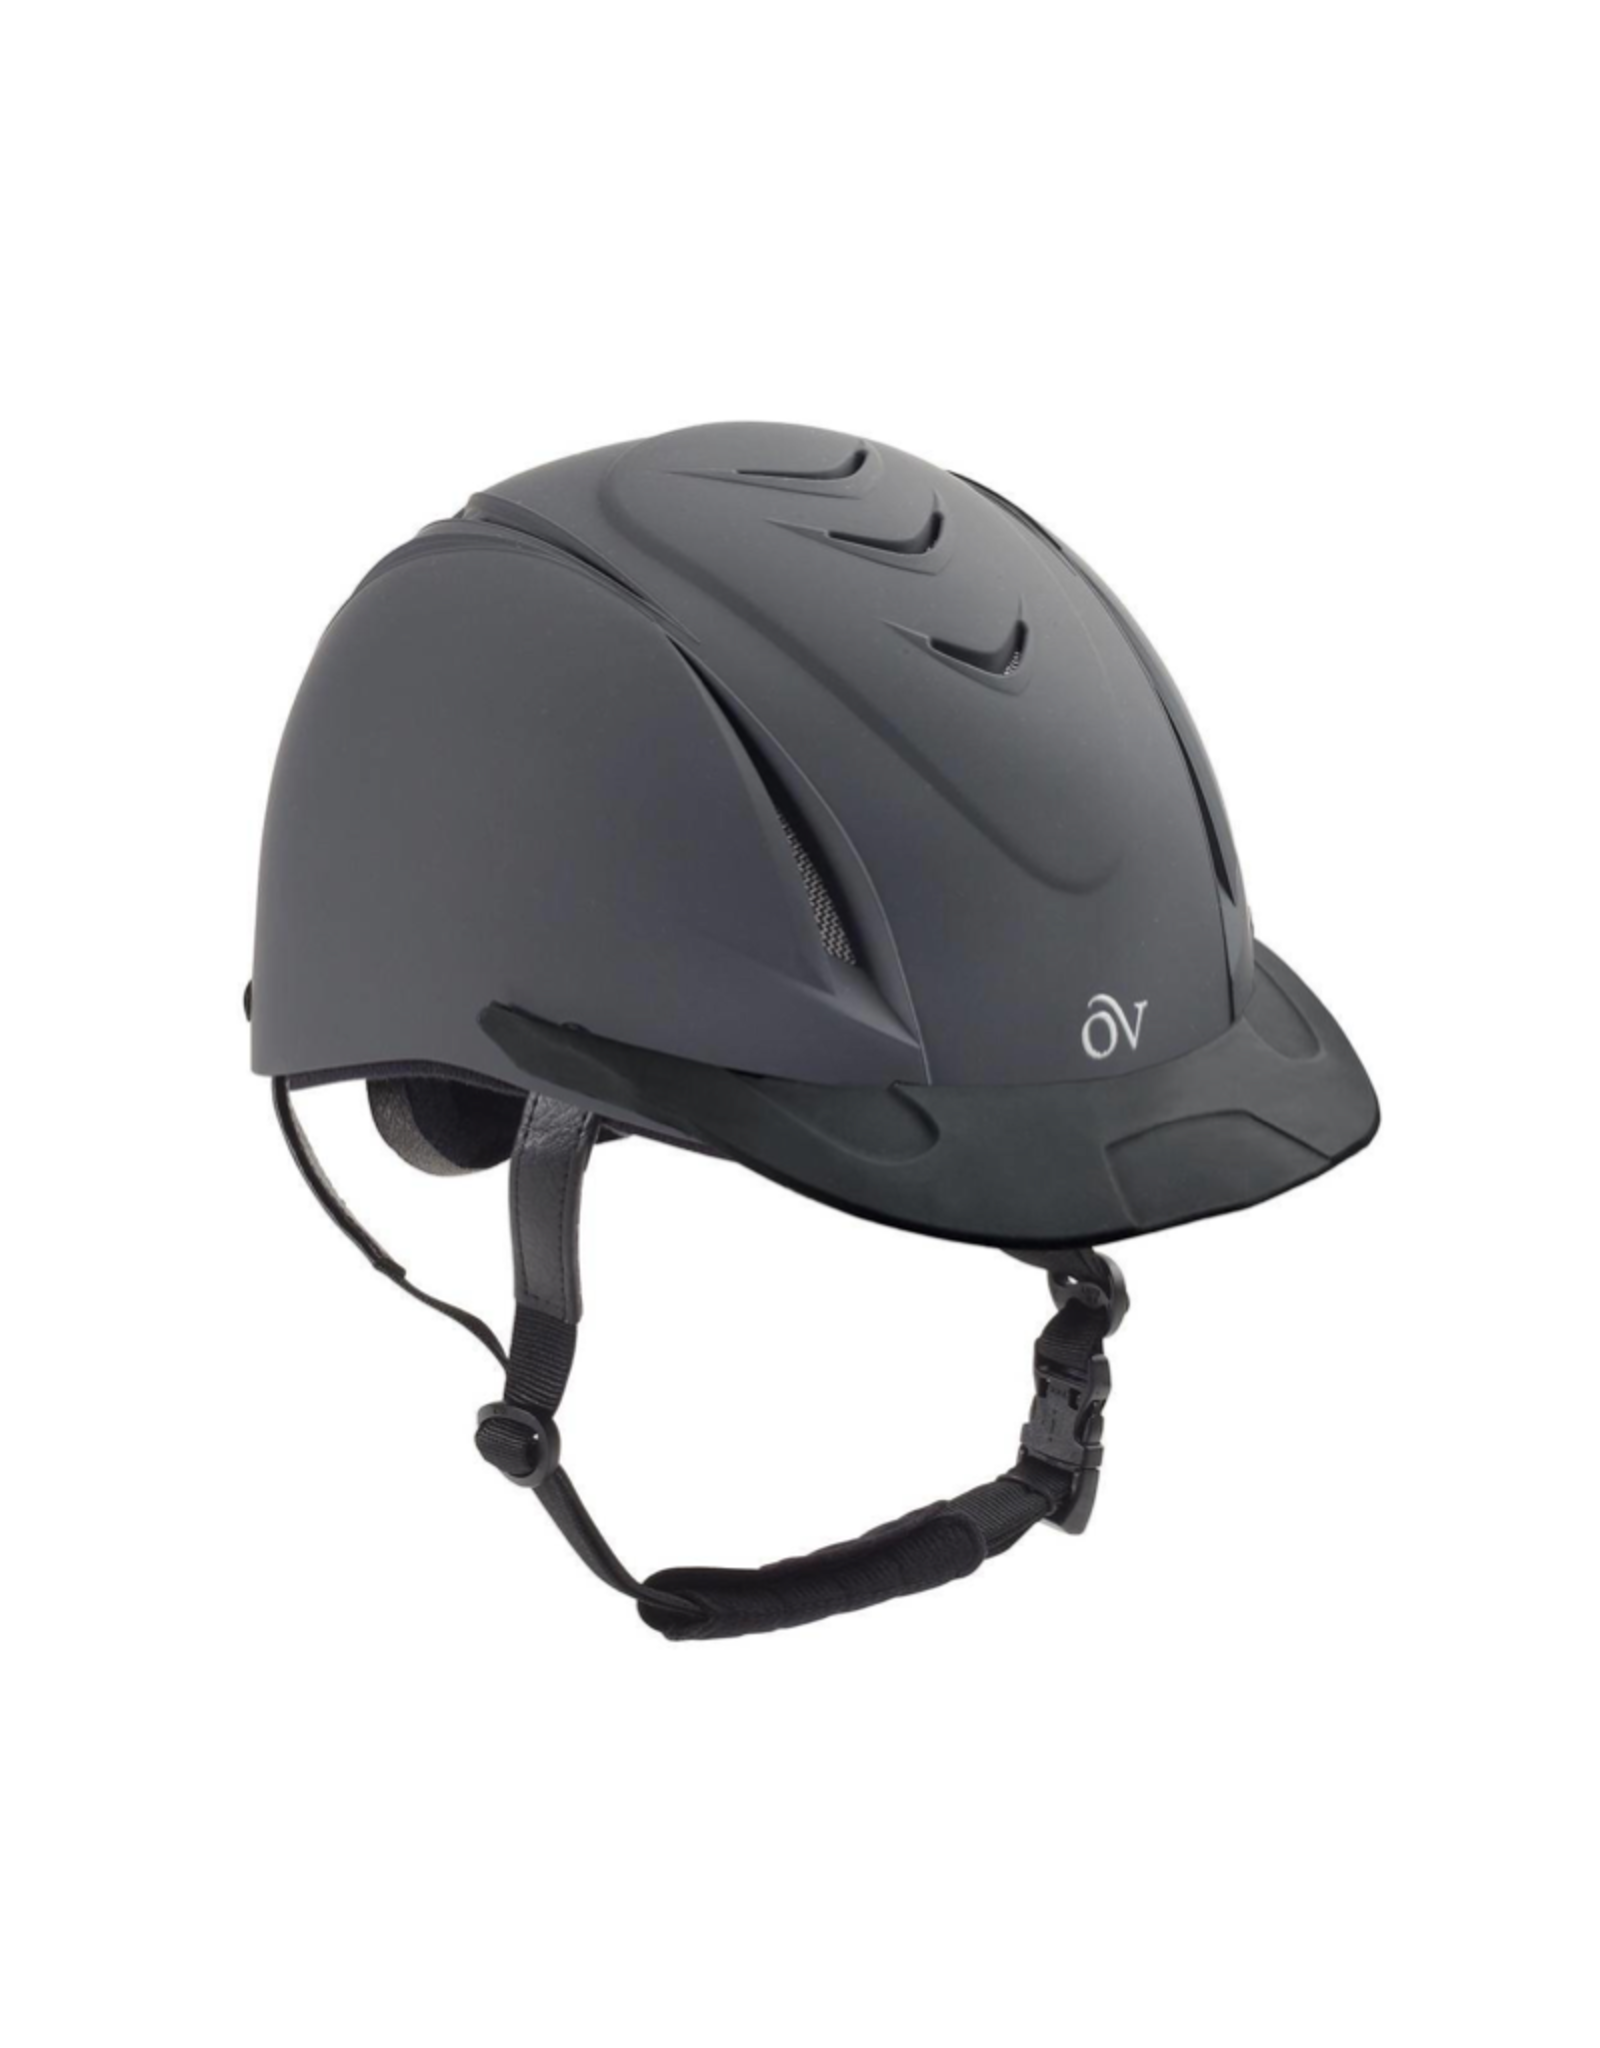 Ovation Delux Schooler Helmet